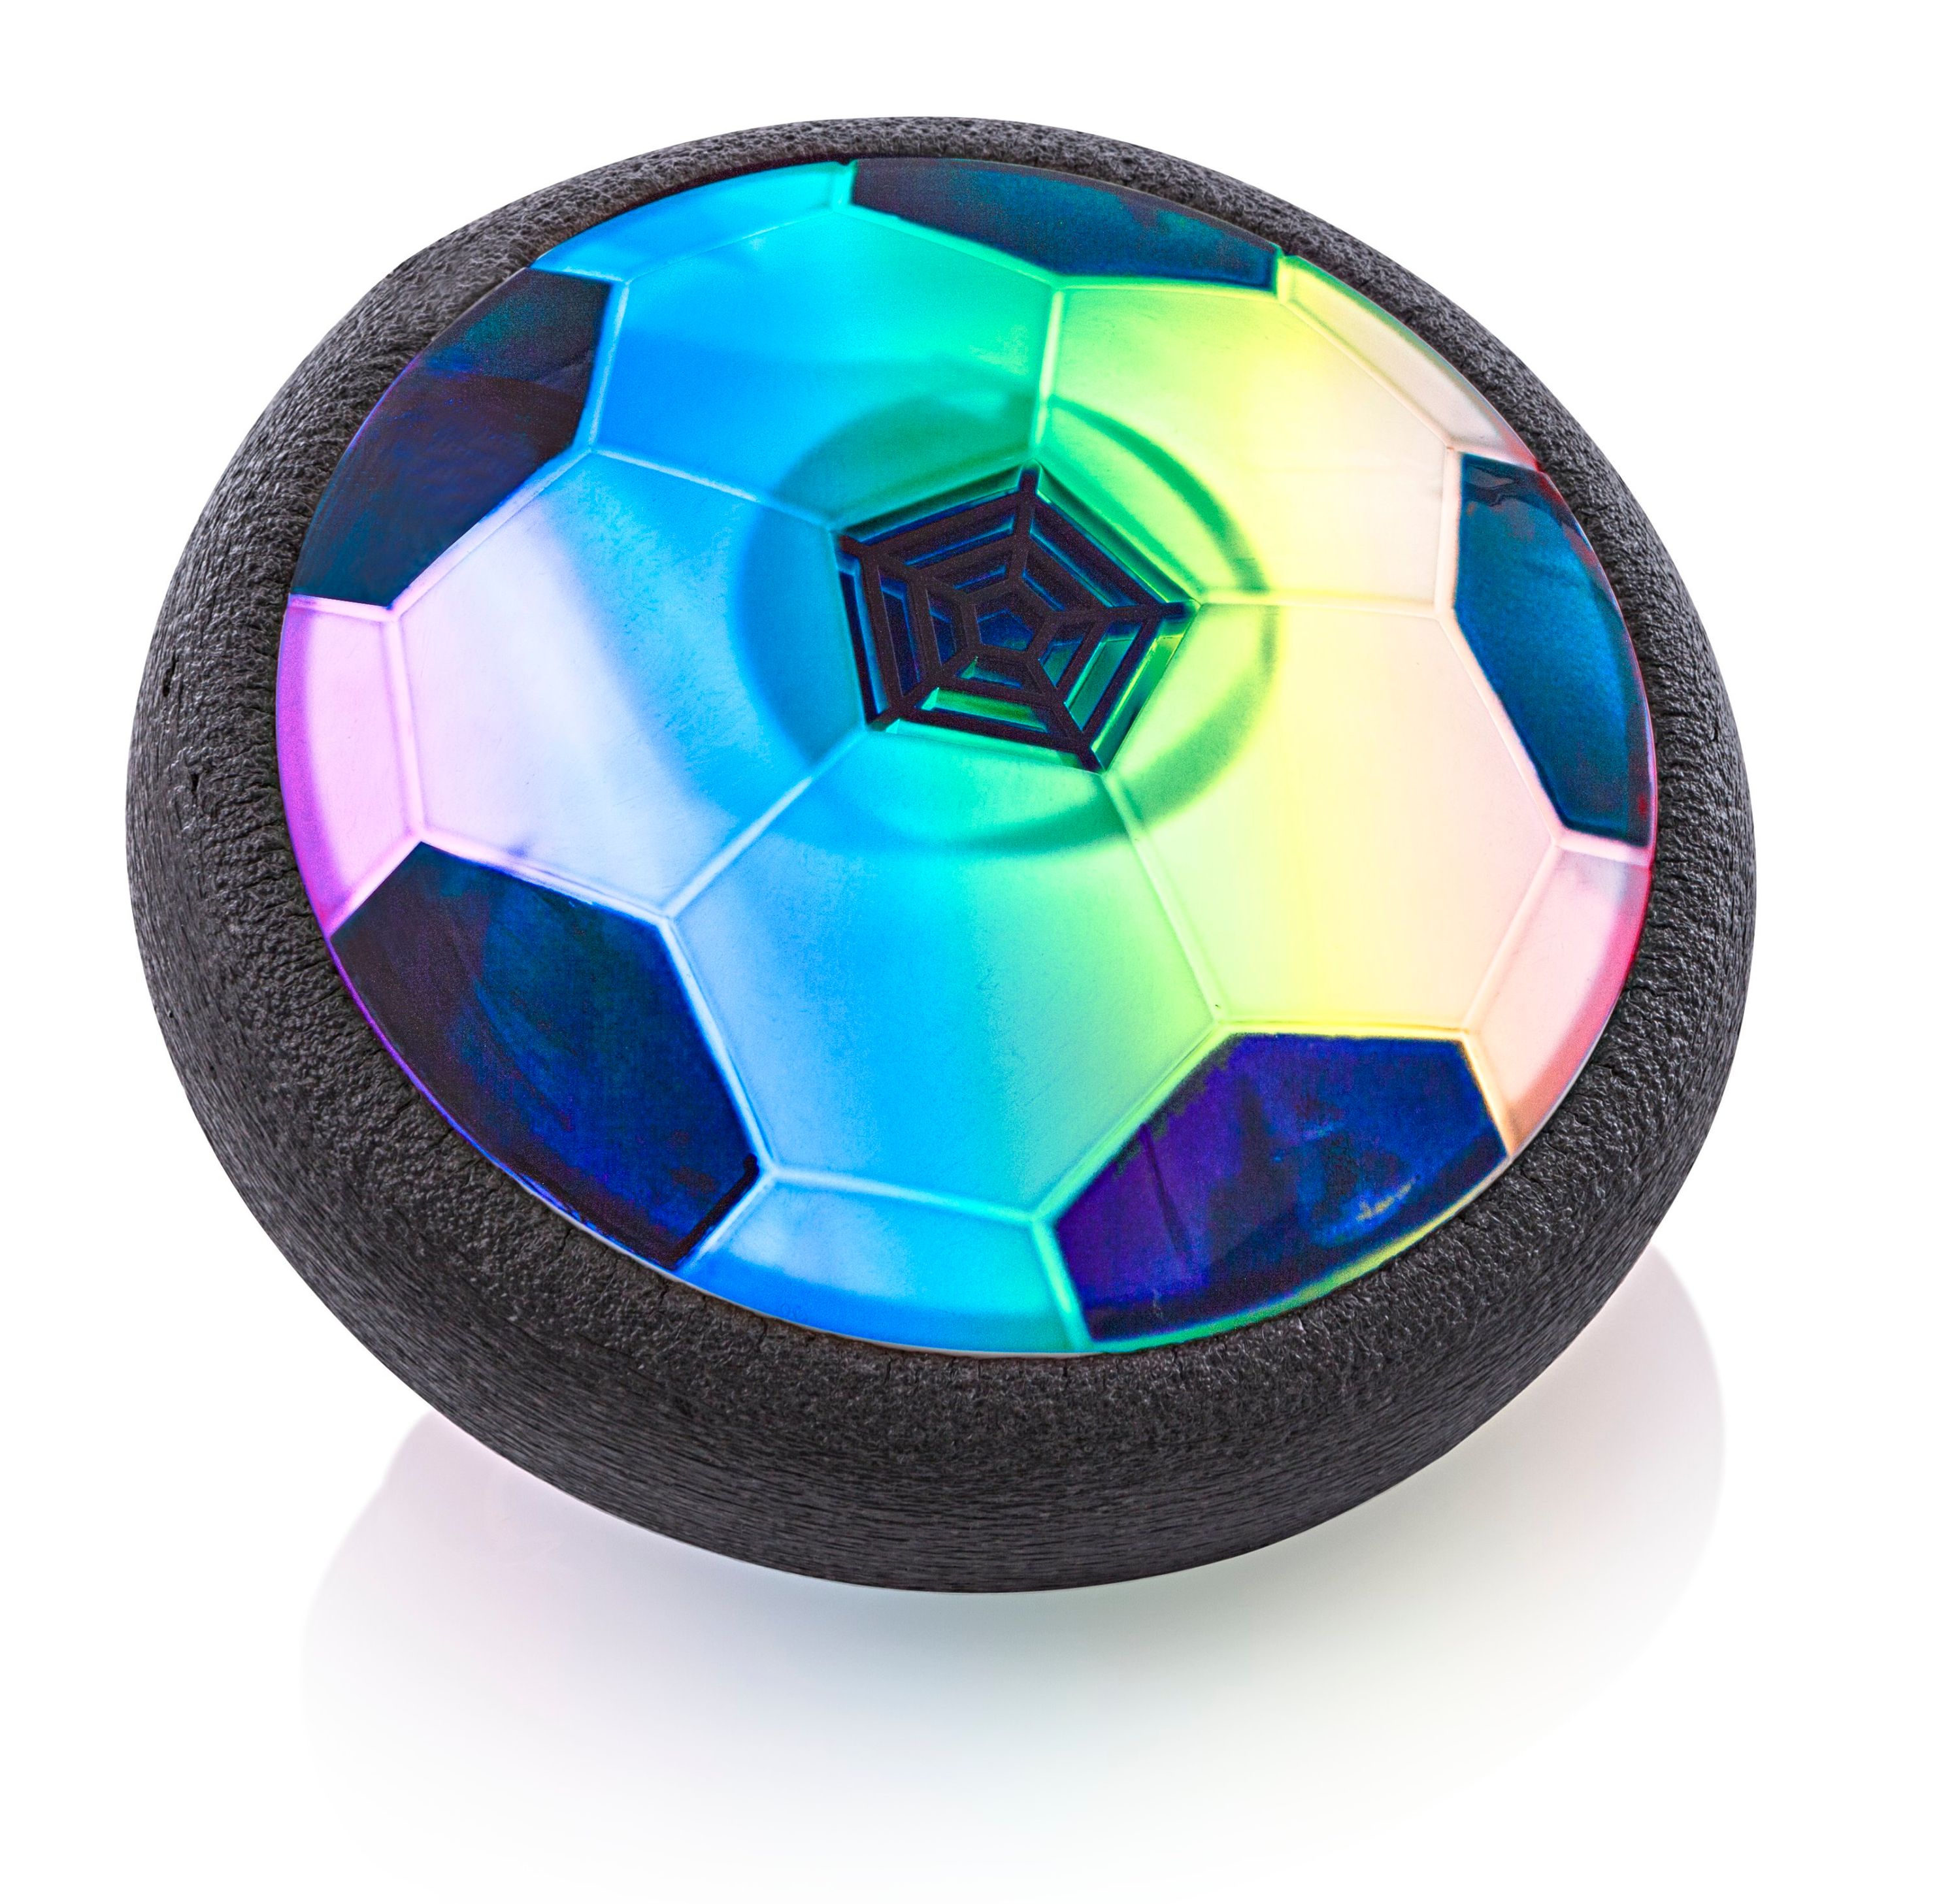 Air-Power-Fußball mit LED in Kr. München - Planegg, Weitere Spielzeug  günstig kaufen, gebraucht oder neu